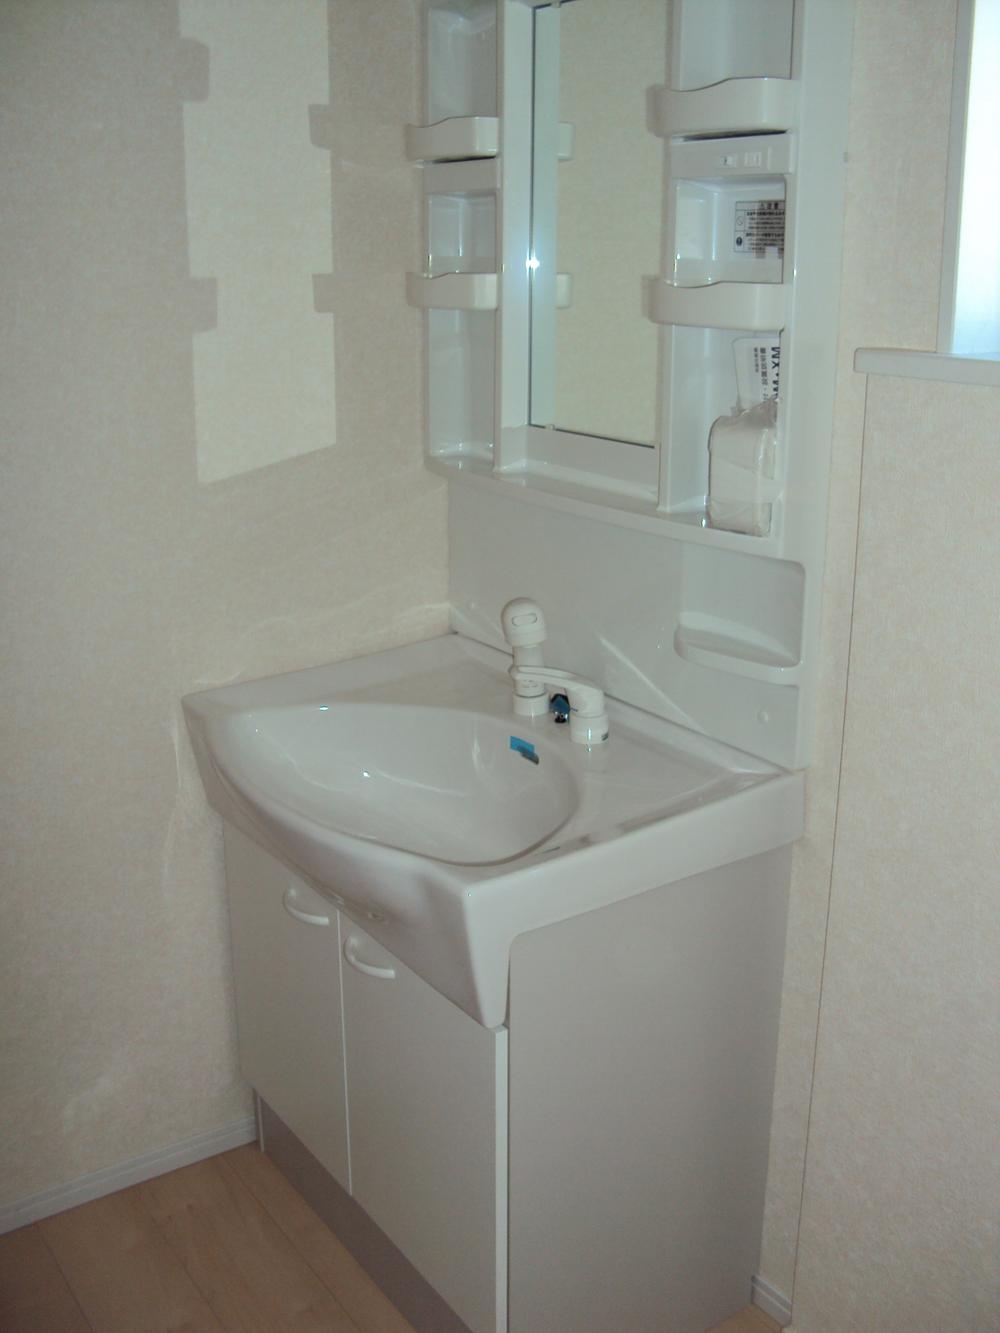 Wash basin, toilet. 7 Building washbasin